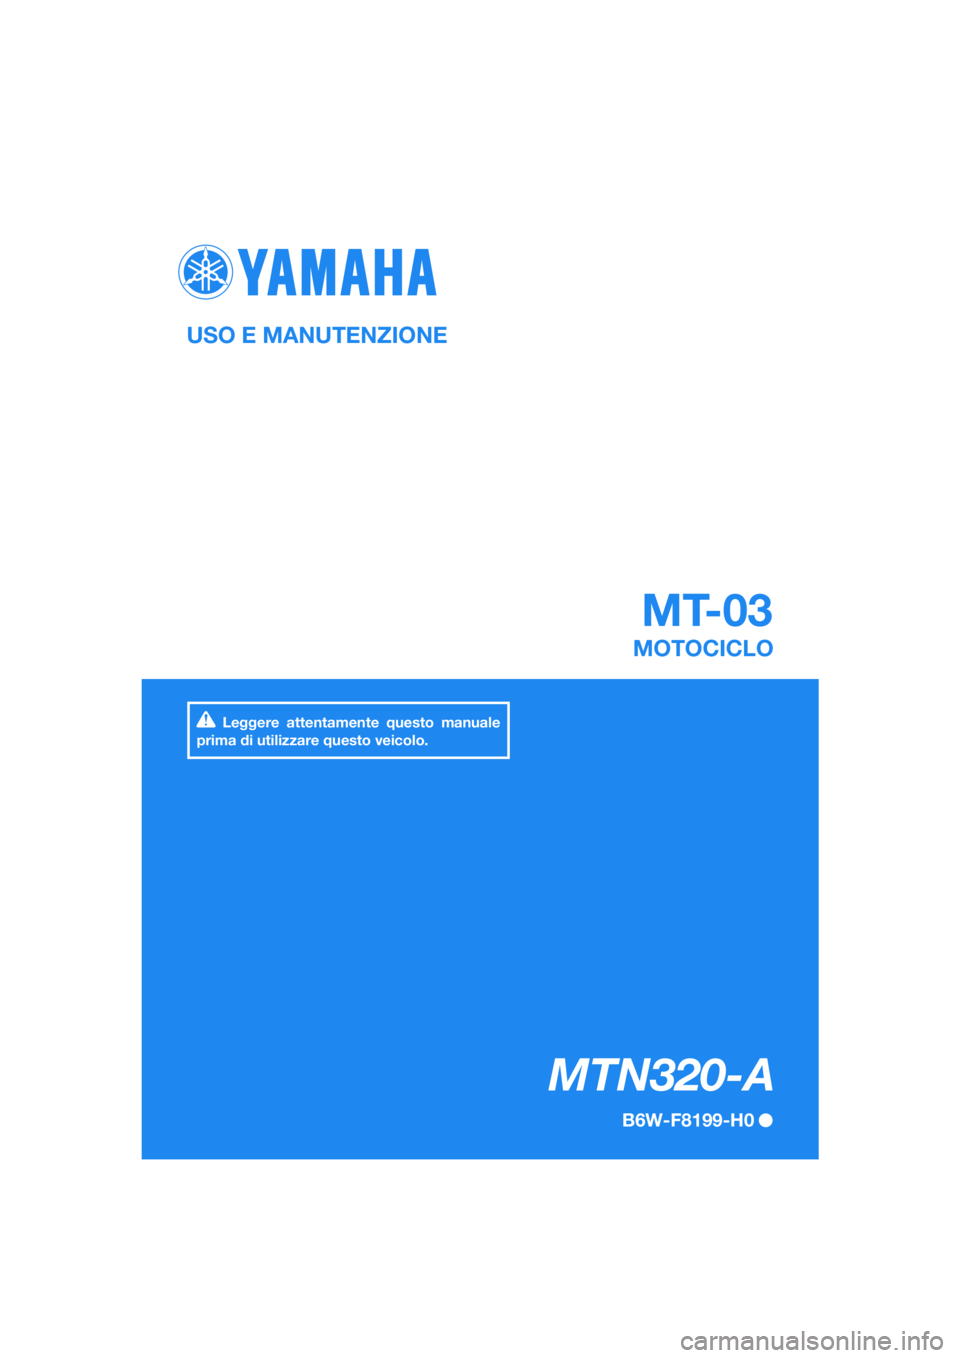 YAMAHA MT-03 2020  Manuale duso (in Italian) DIC183
MTN320-A
MT-03
USO E MANUTENZIONE
B6W-F8199-H0
MOTOCICLO
Leggere attentamente questo manuale 
prima di utilizzare questo veicolo.
[Italian  (H)] 